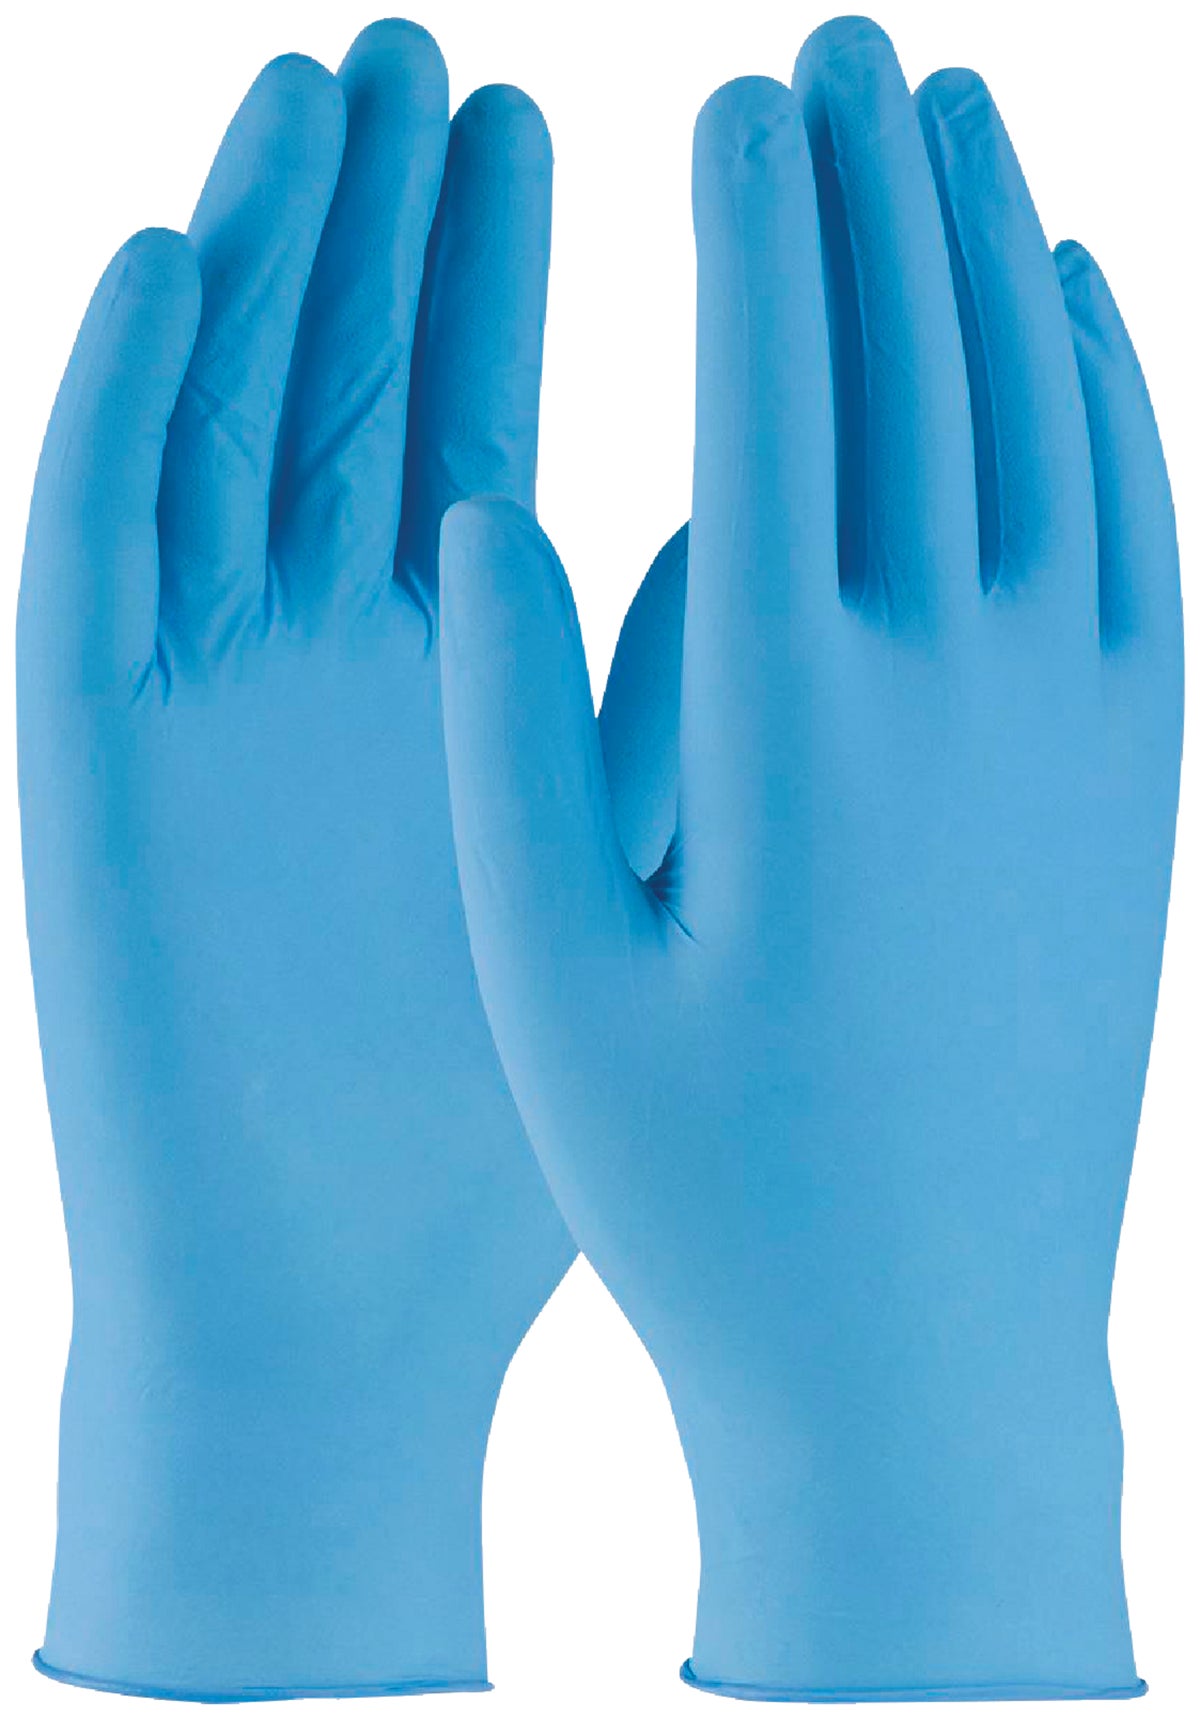 Перчатки Гловес нитриловые. Disposable Nitrile Gloves перчатки. Перчатки нитриловые Nitrile-4 mil.